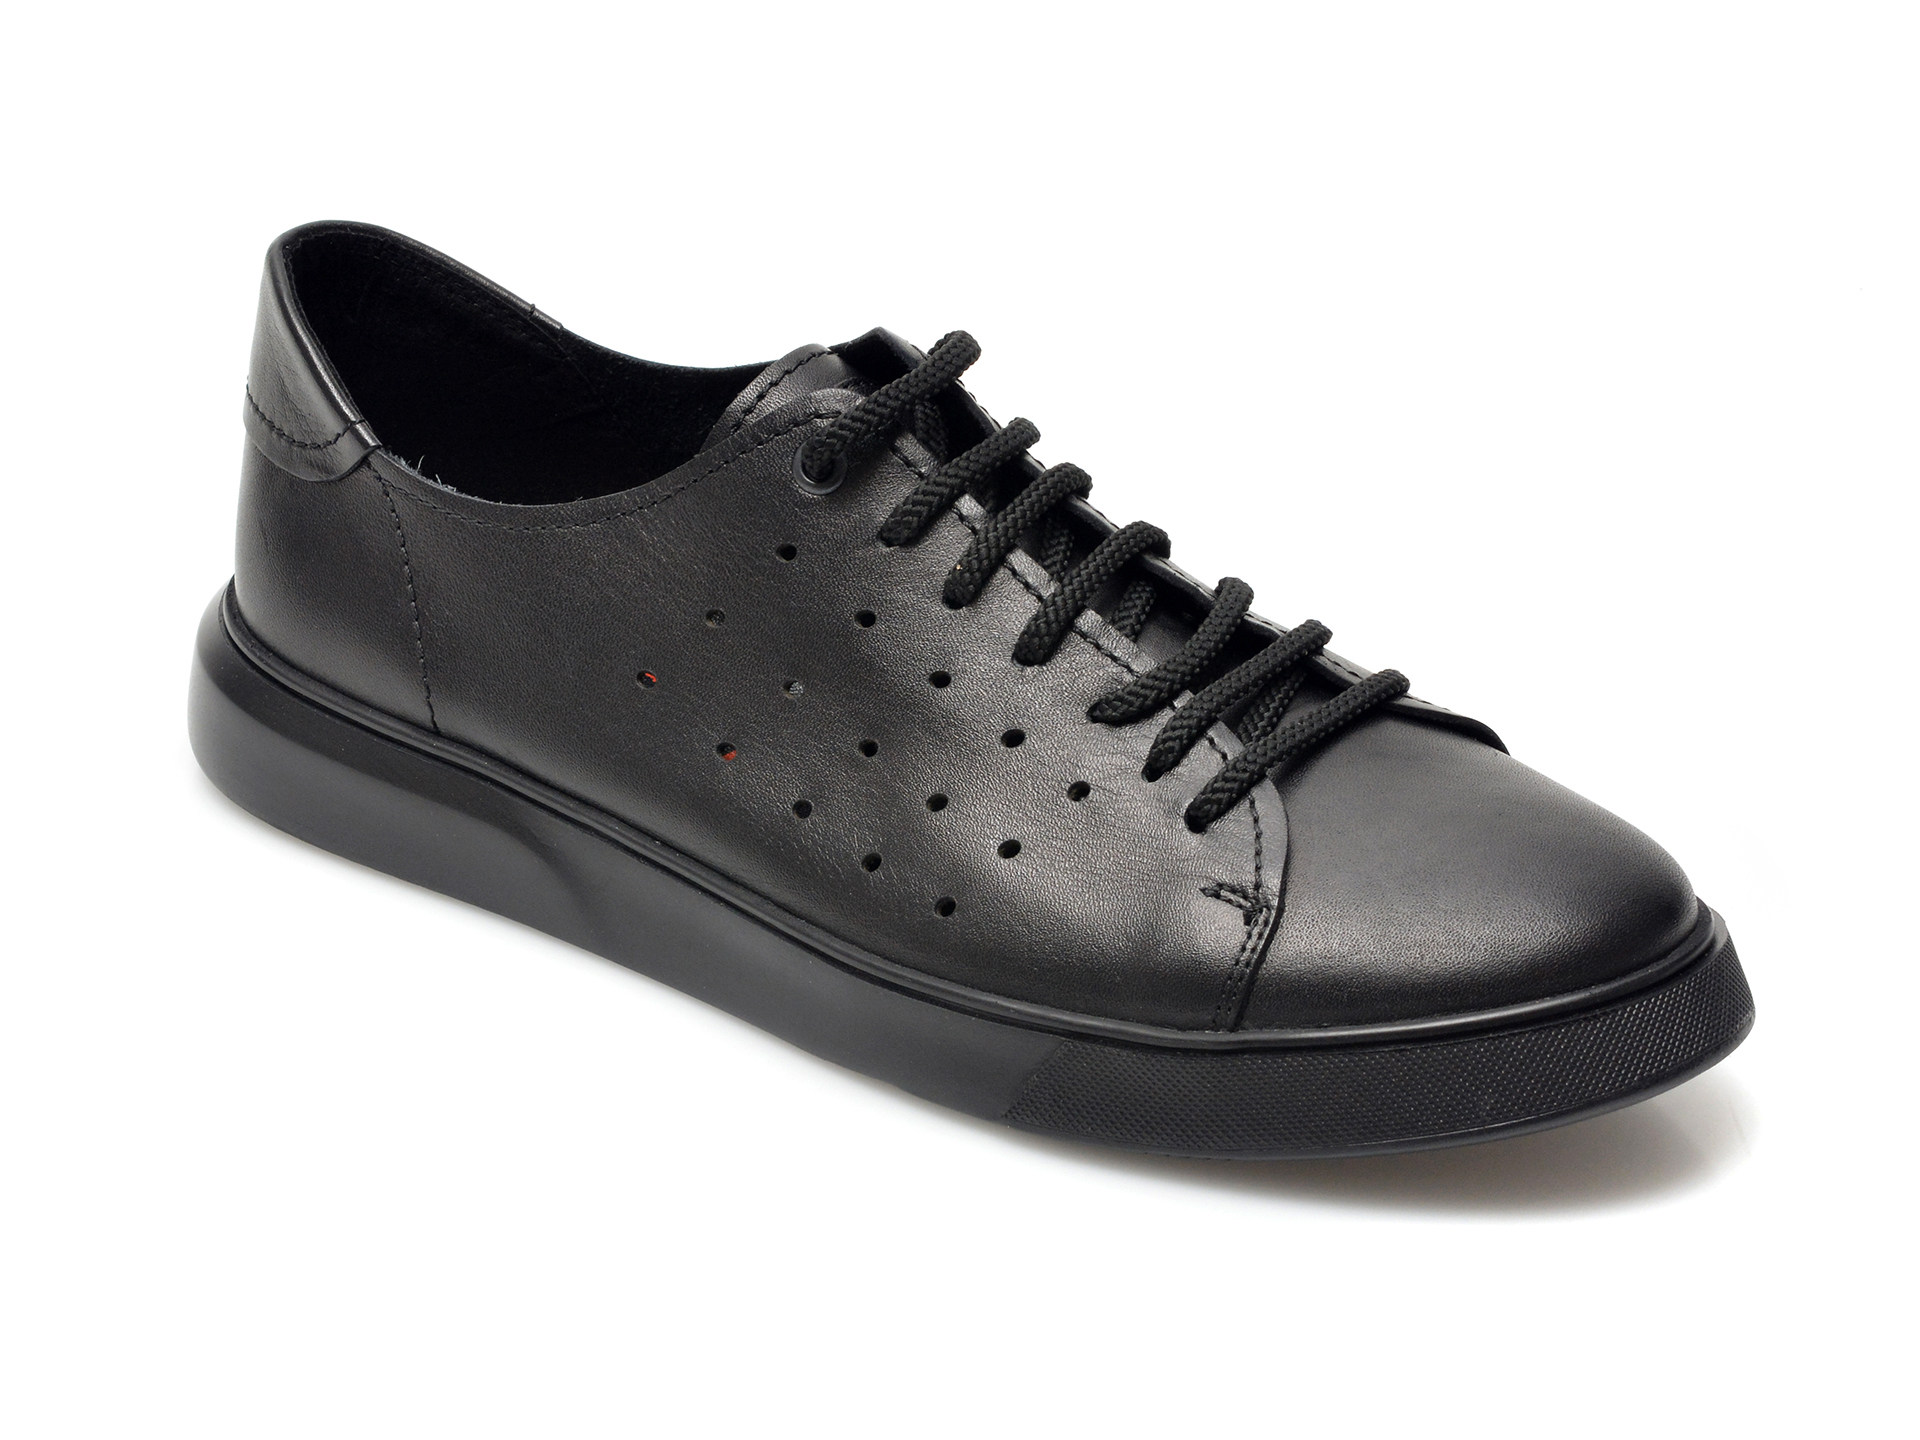 Pantofi OTTER negri, E2172, din piele naturala Otter